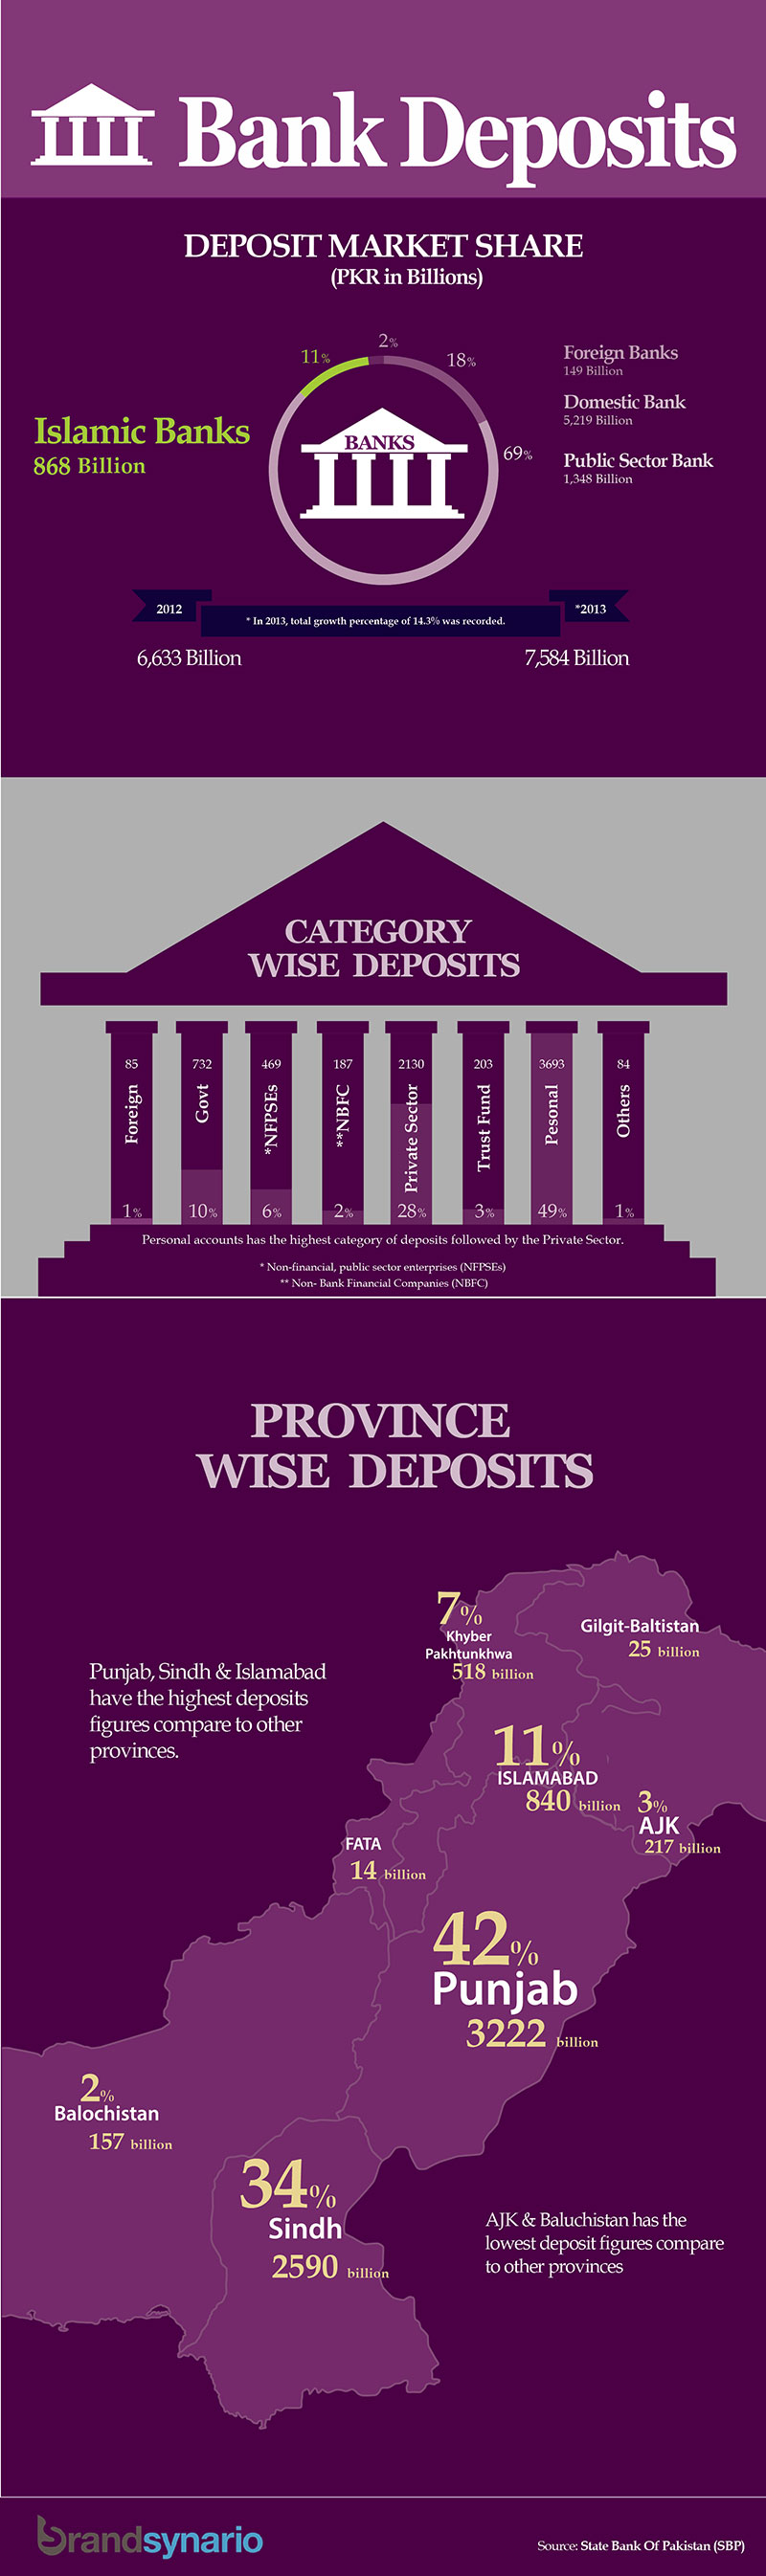 Bank-Deposits-from-Jan-Dec-2013-in-Pakistan